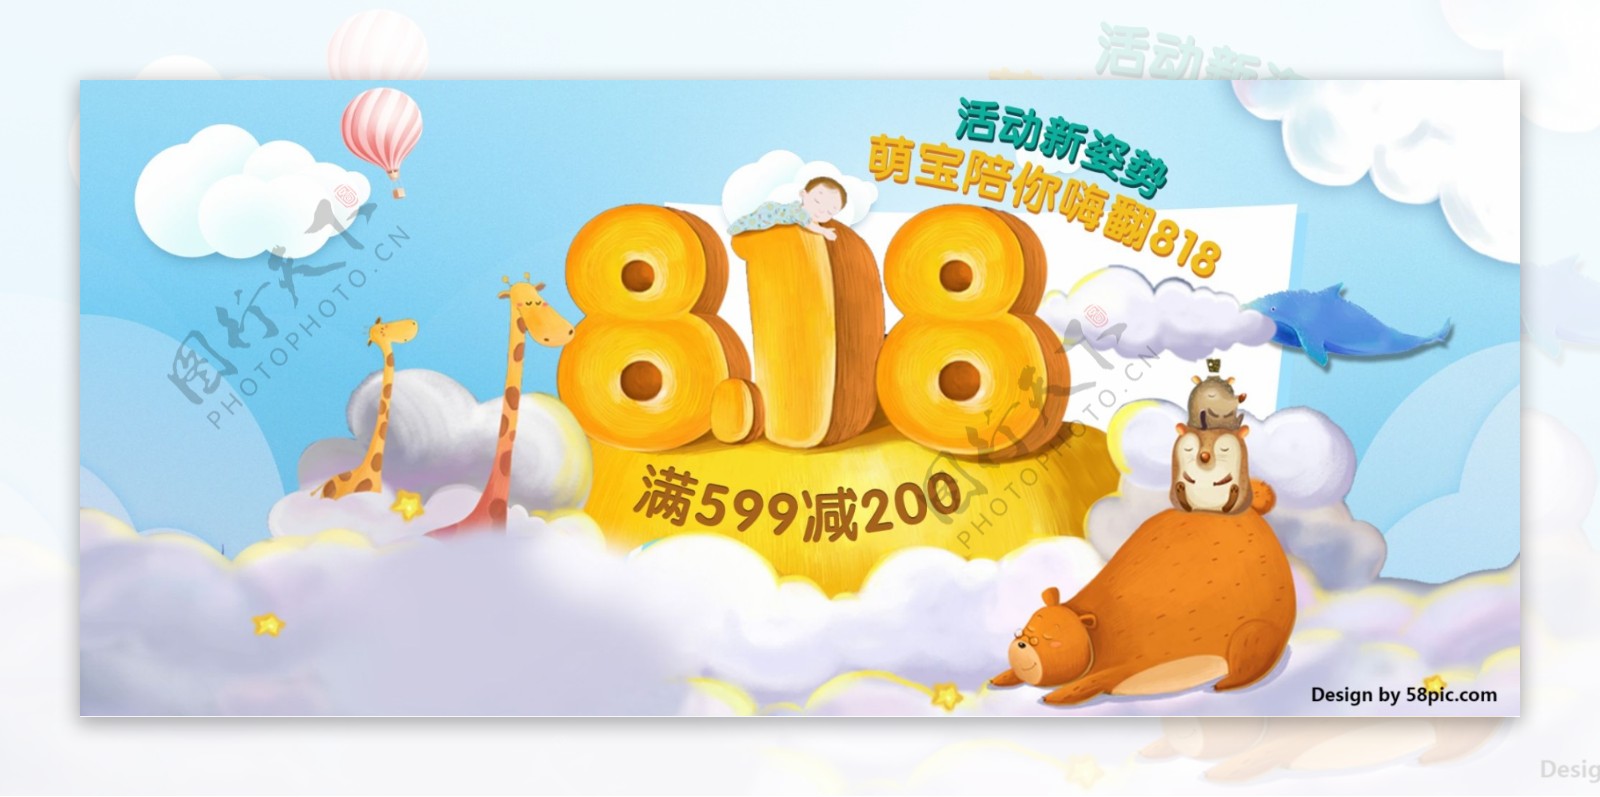 天猫电商818暑期淘宝海报banner婴儿儿童卡通模板背景模板元素下载